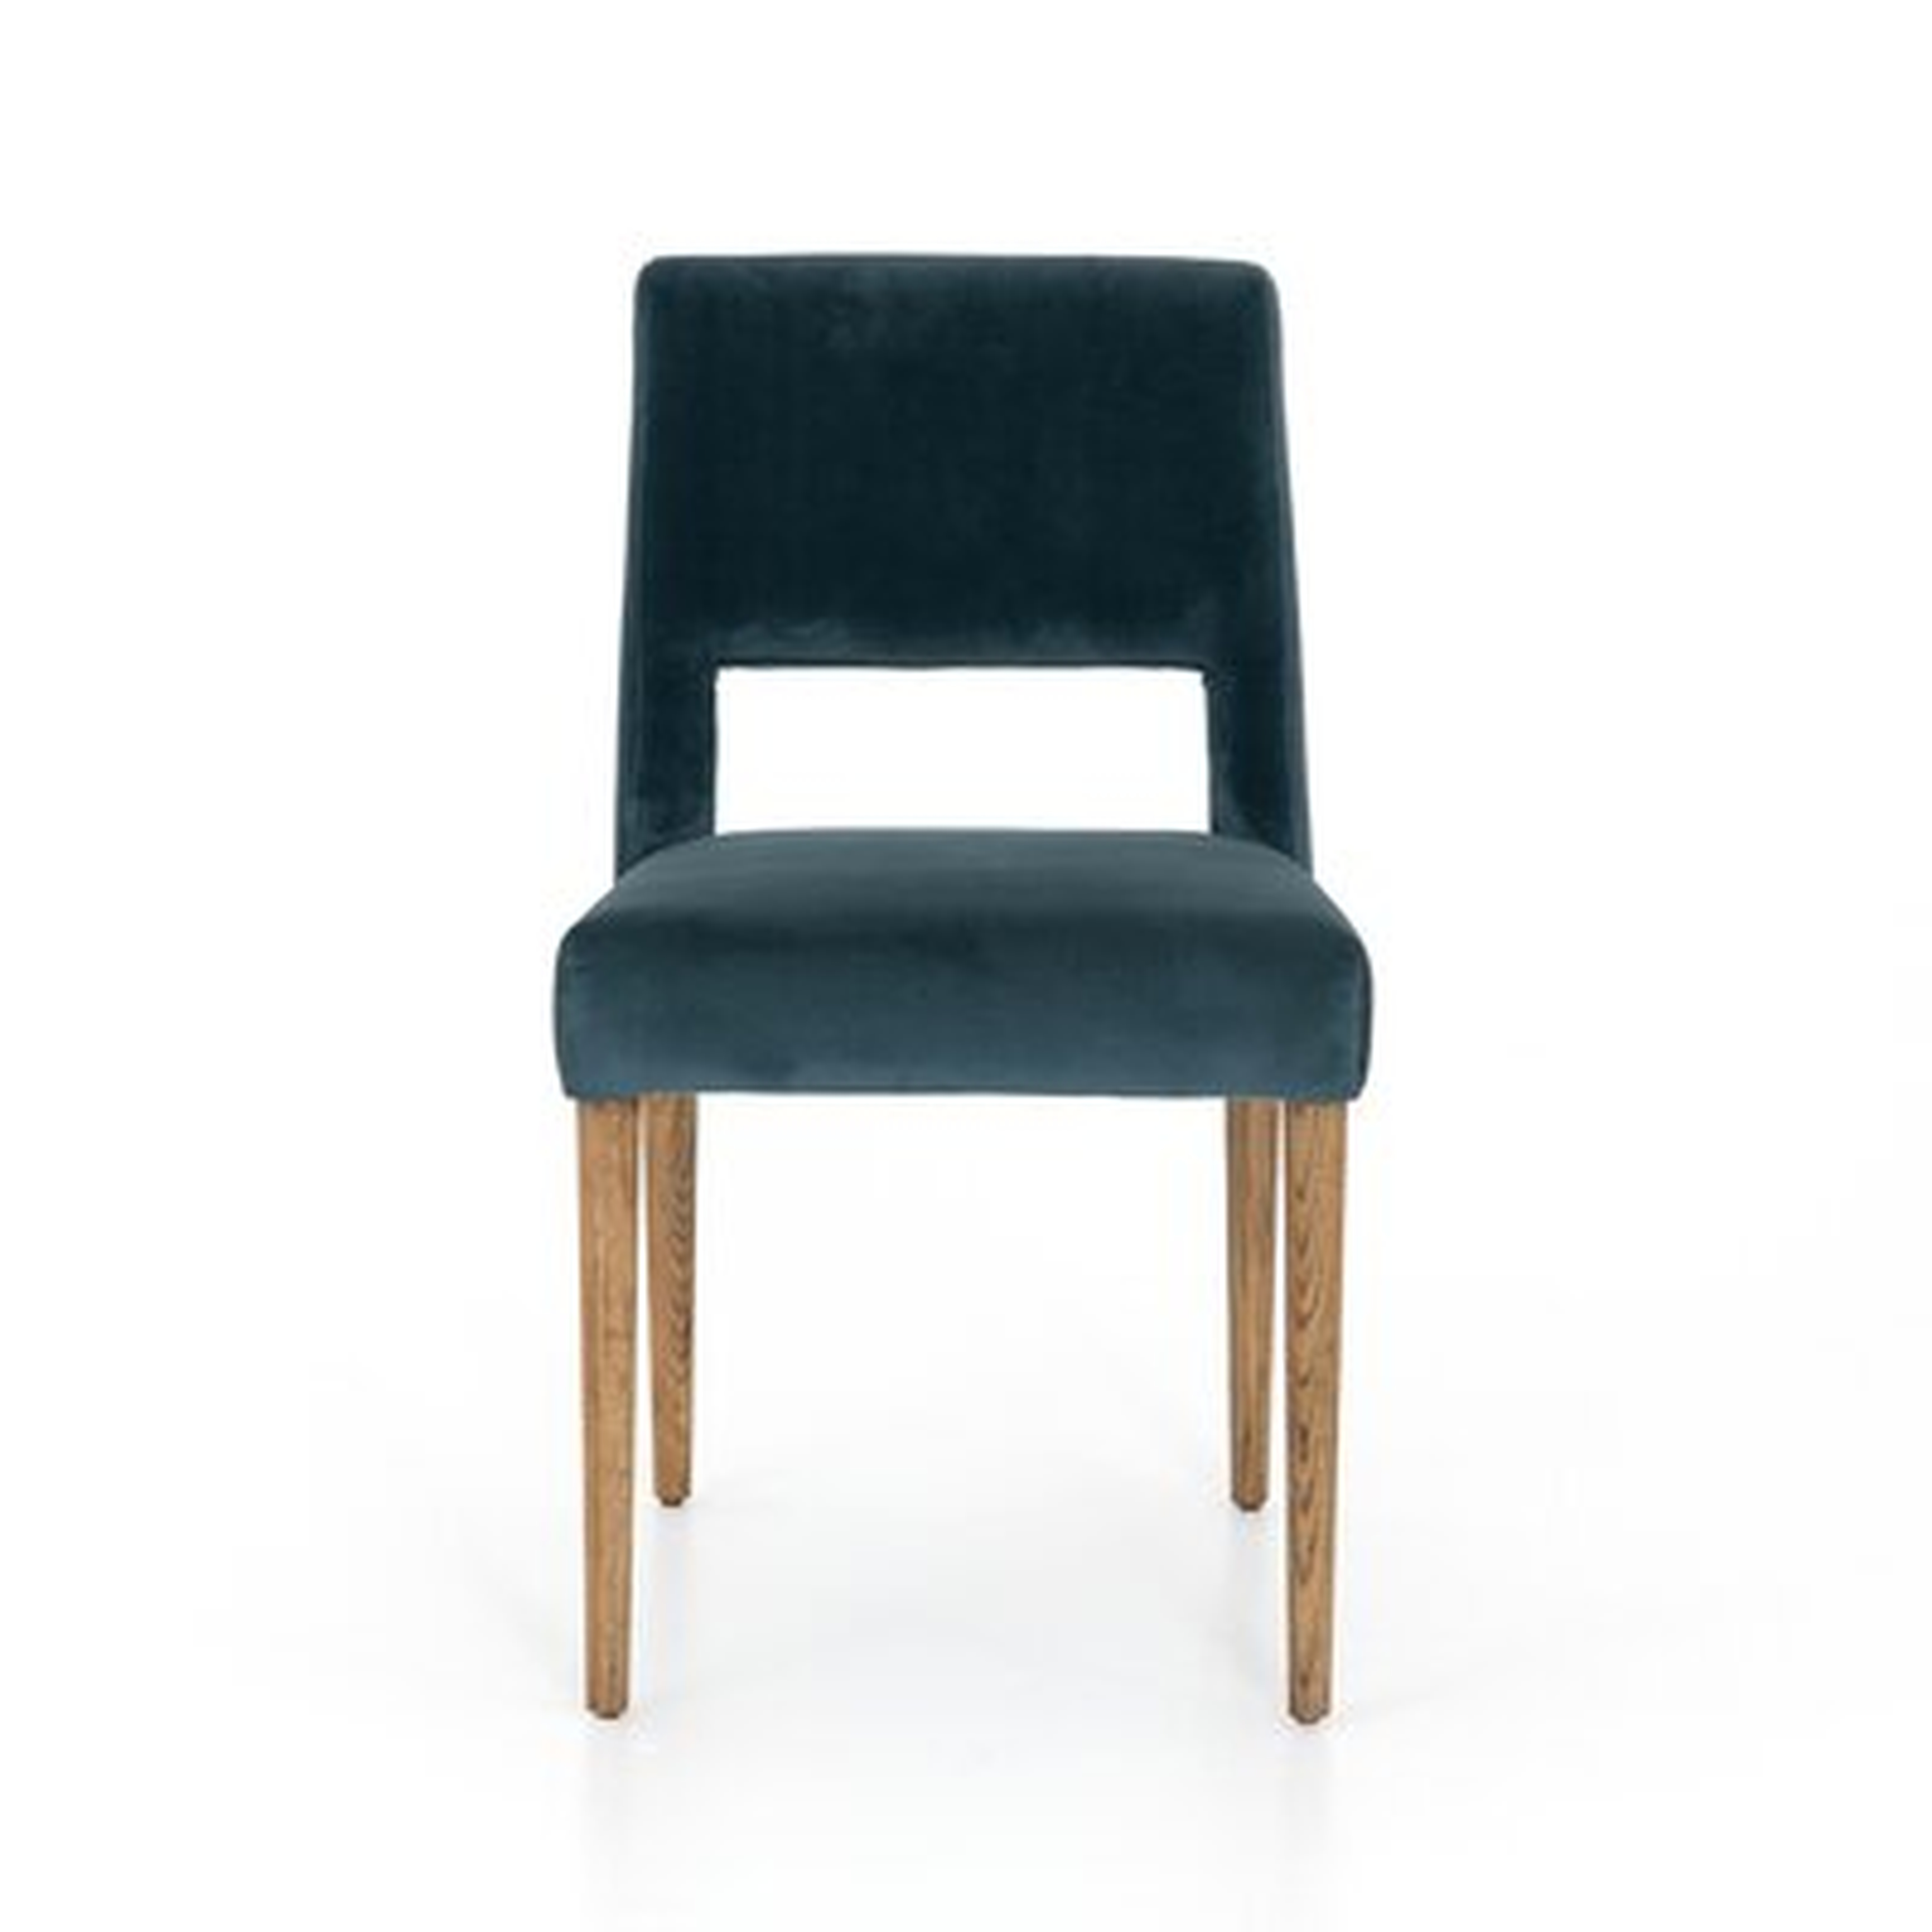 Hoosier Upholstered Side Chair in Teal Blue - Wayfair